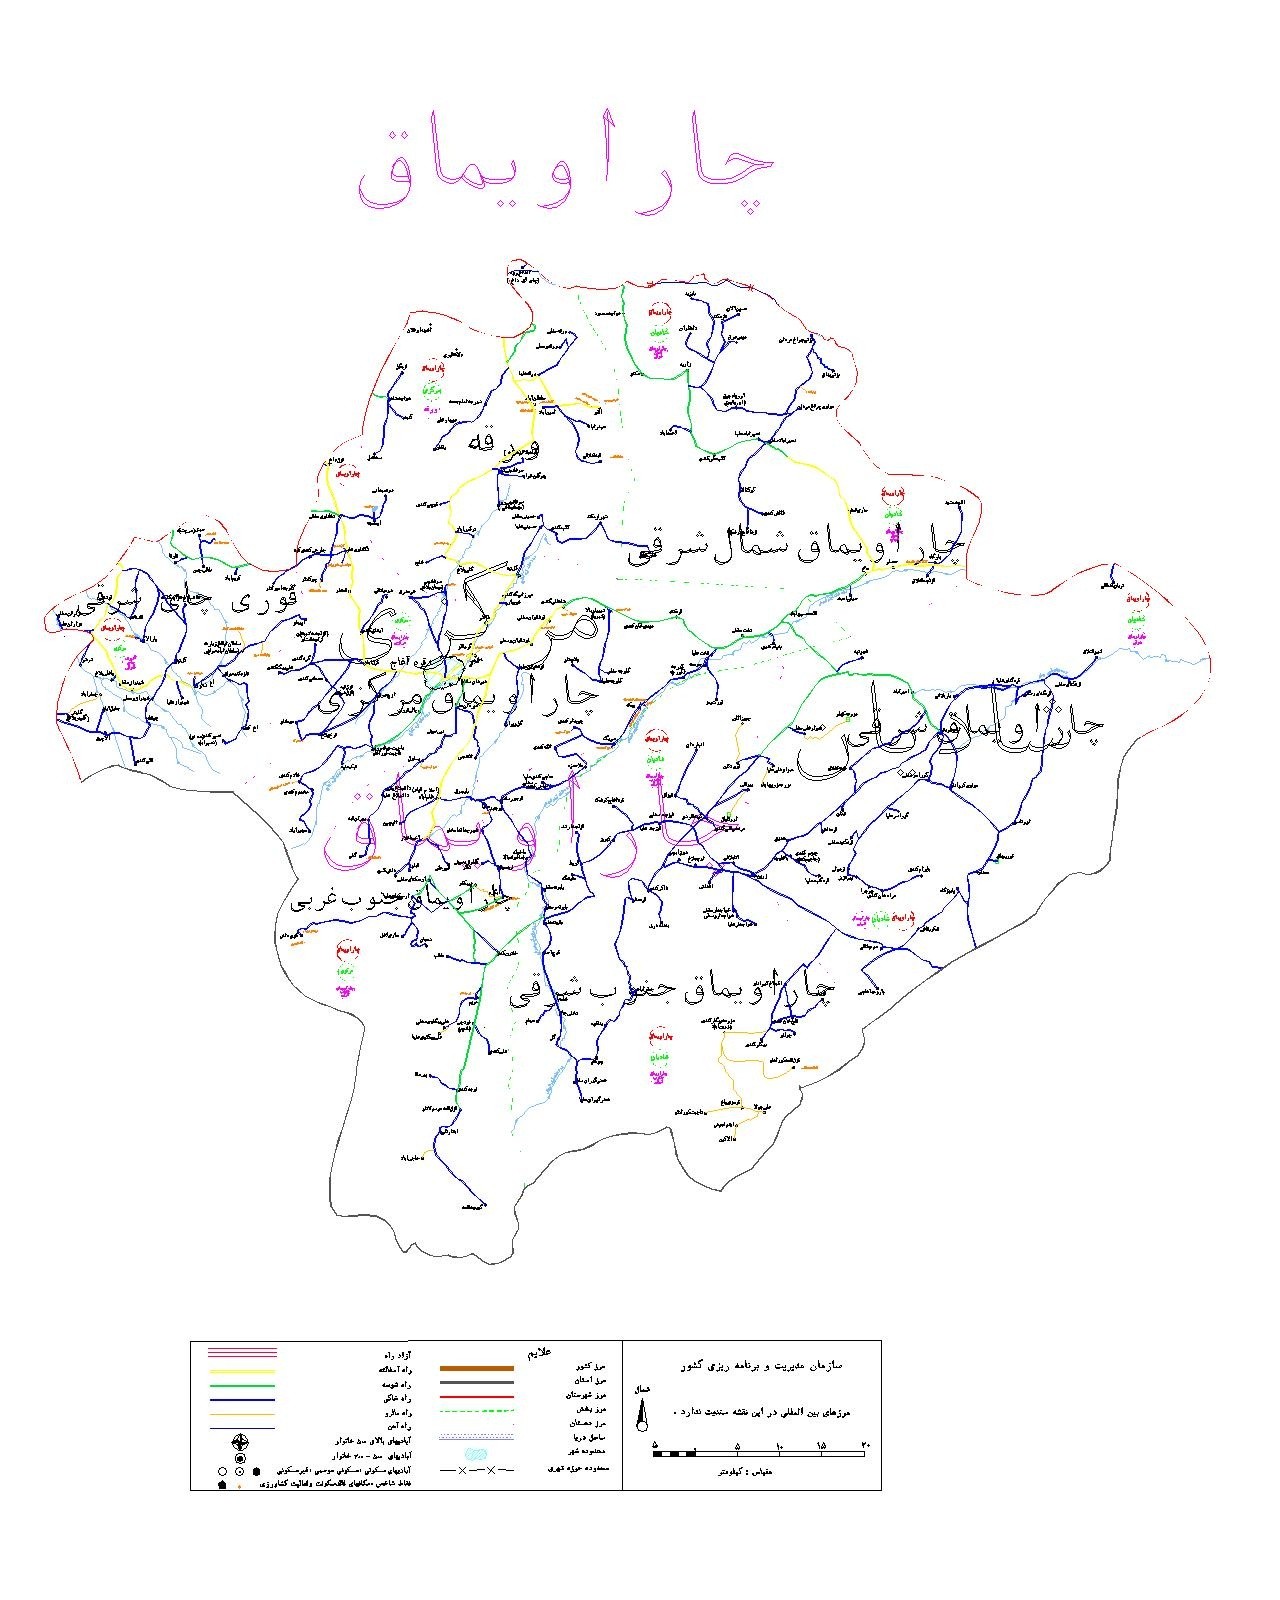 دانلود نقشه اتوکدی شهرستان چاراویماق - استان آذربایجان شرقی - فایل کده:  فروشگاه همه!